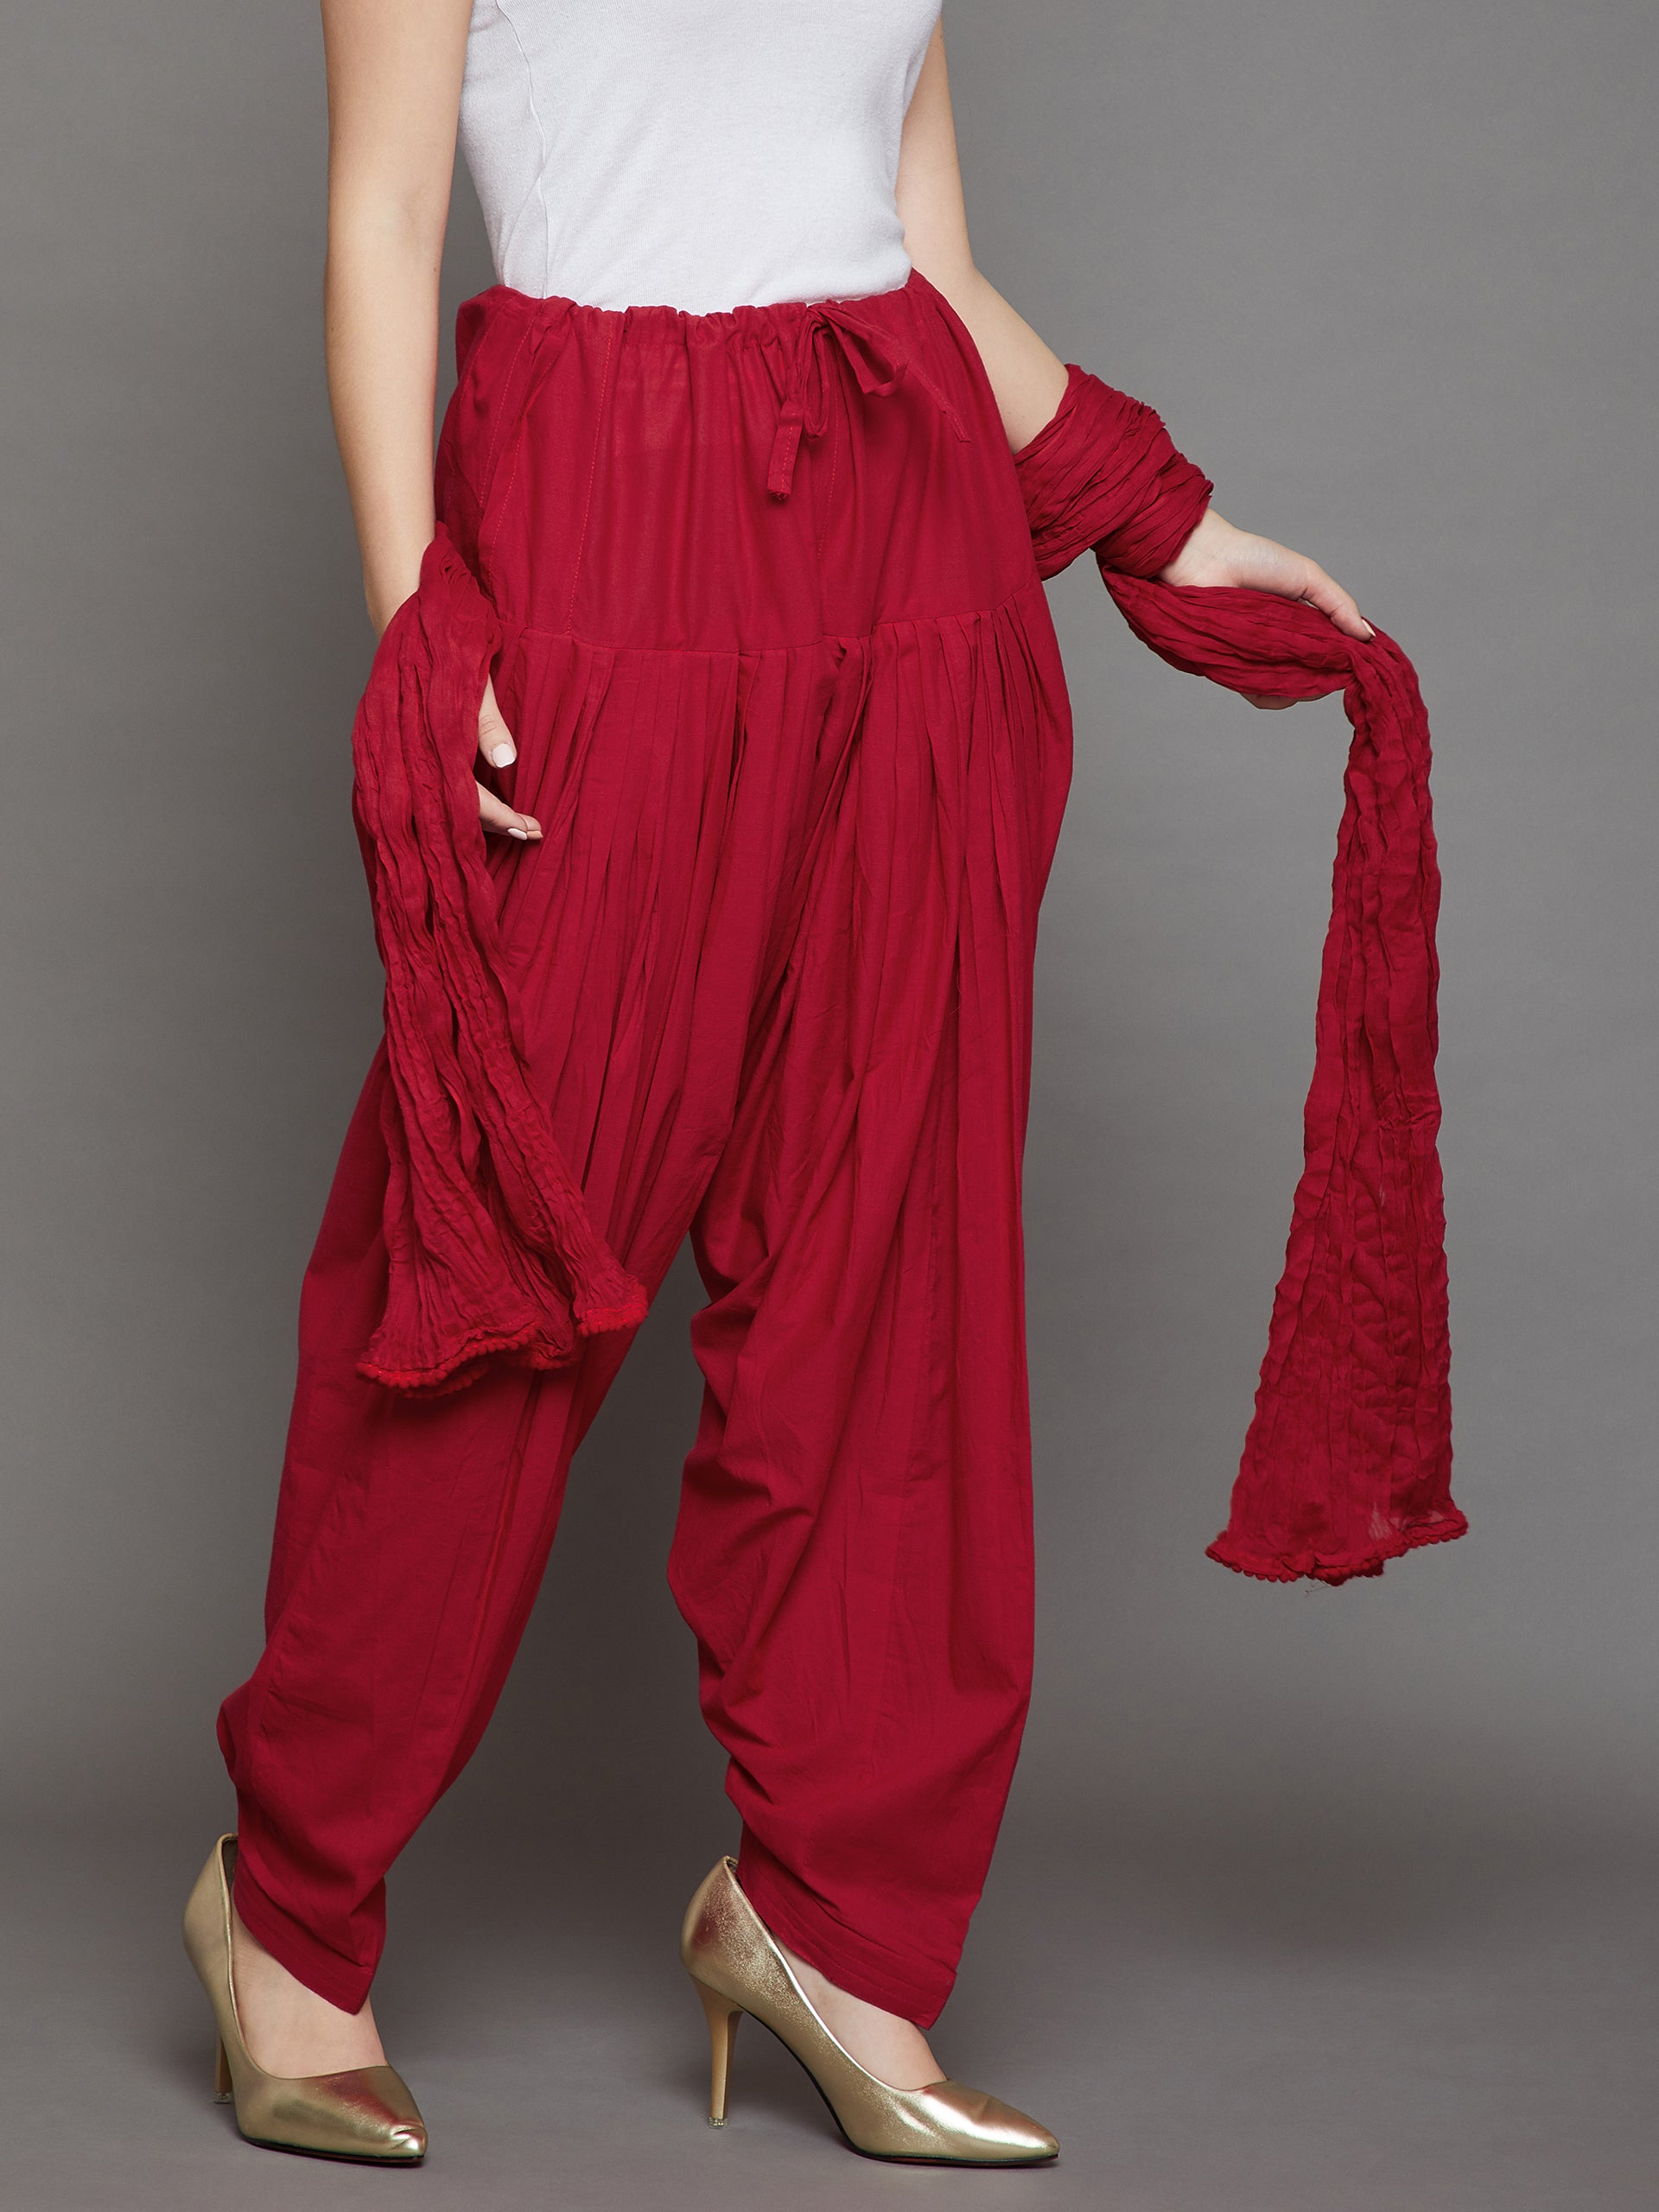 Buy Women Red Patiyala / patiala pants Dhoti Salwar for women ,VIscouse -  at Best Price Best Indian Collection Saree - Gia Designer